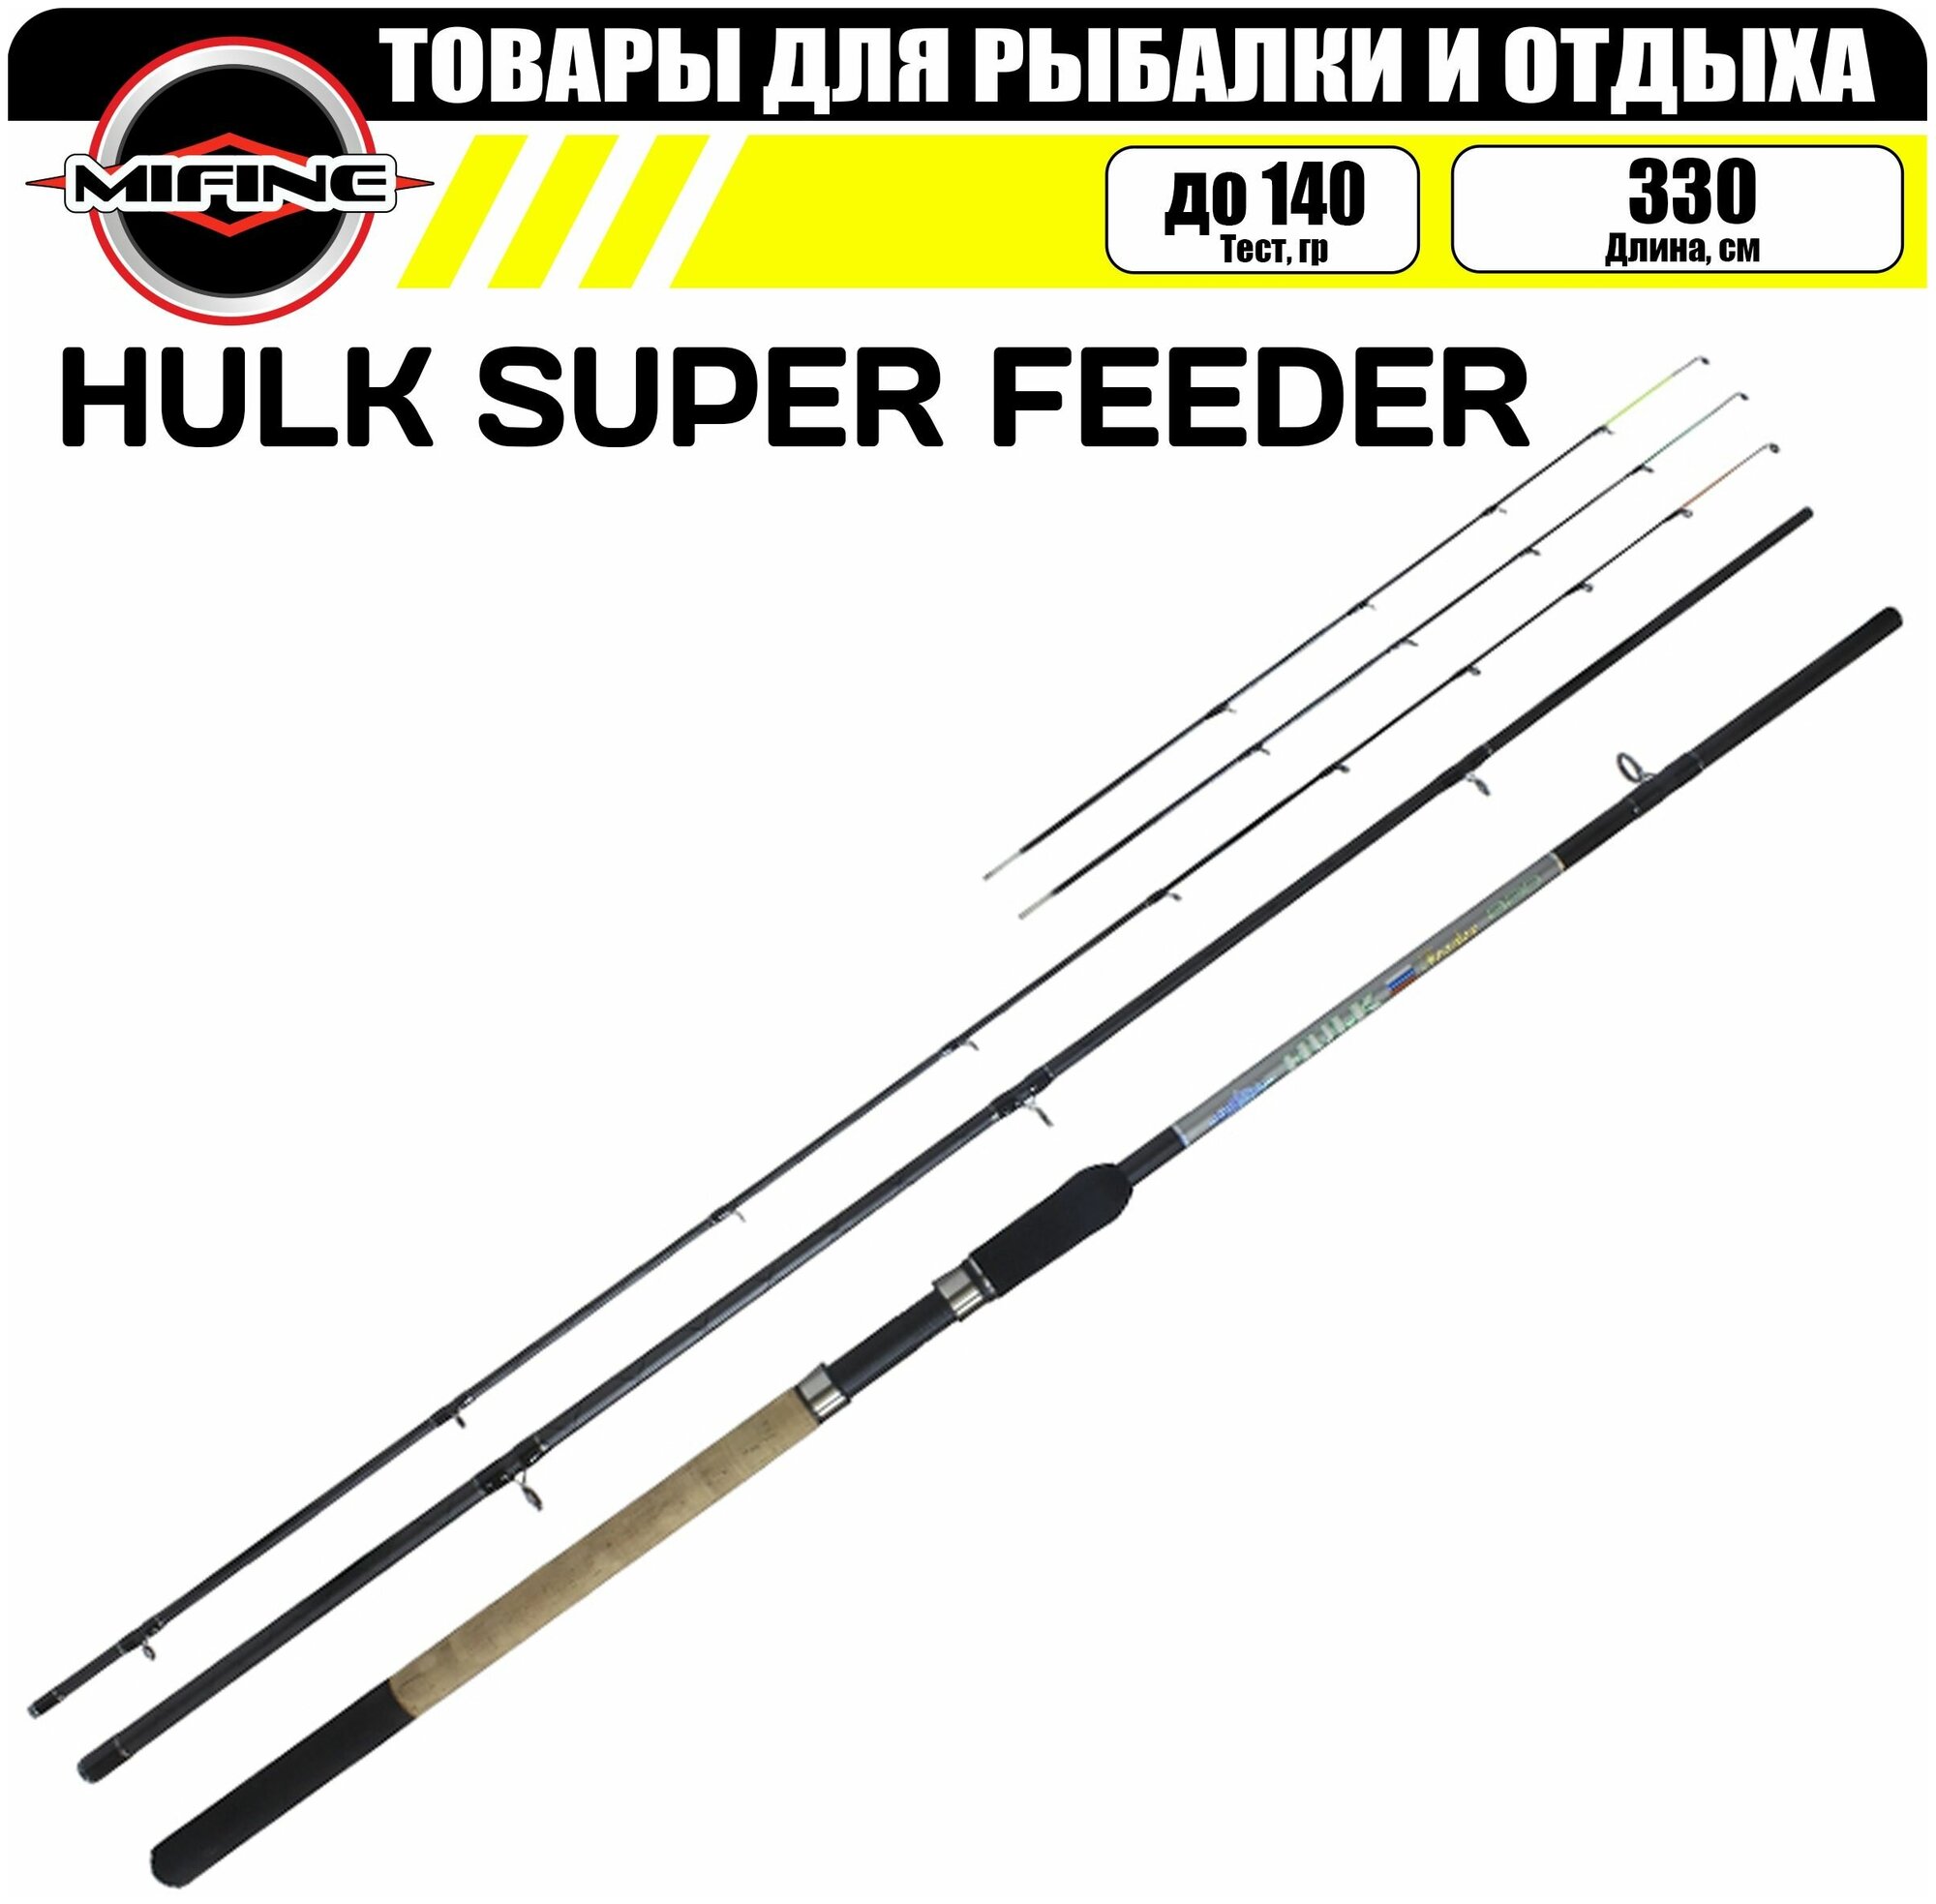 Удилище фидерное MIFINE HULK SUPER FEEDER 3.3м (до 140гр), для рыбалки, рыболовное, штекерное, фидер